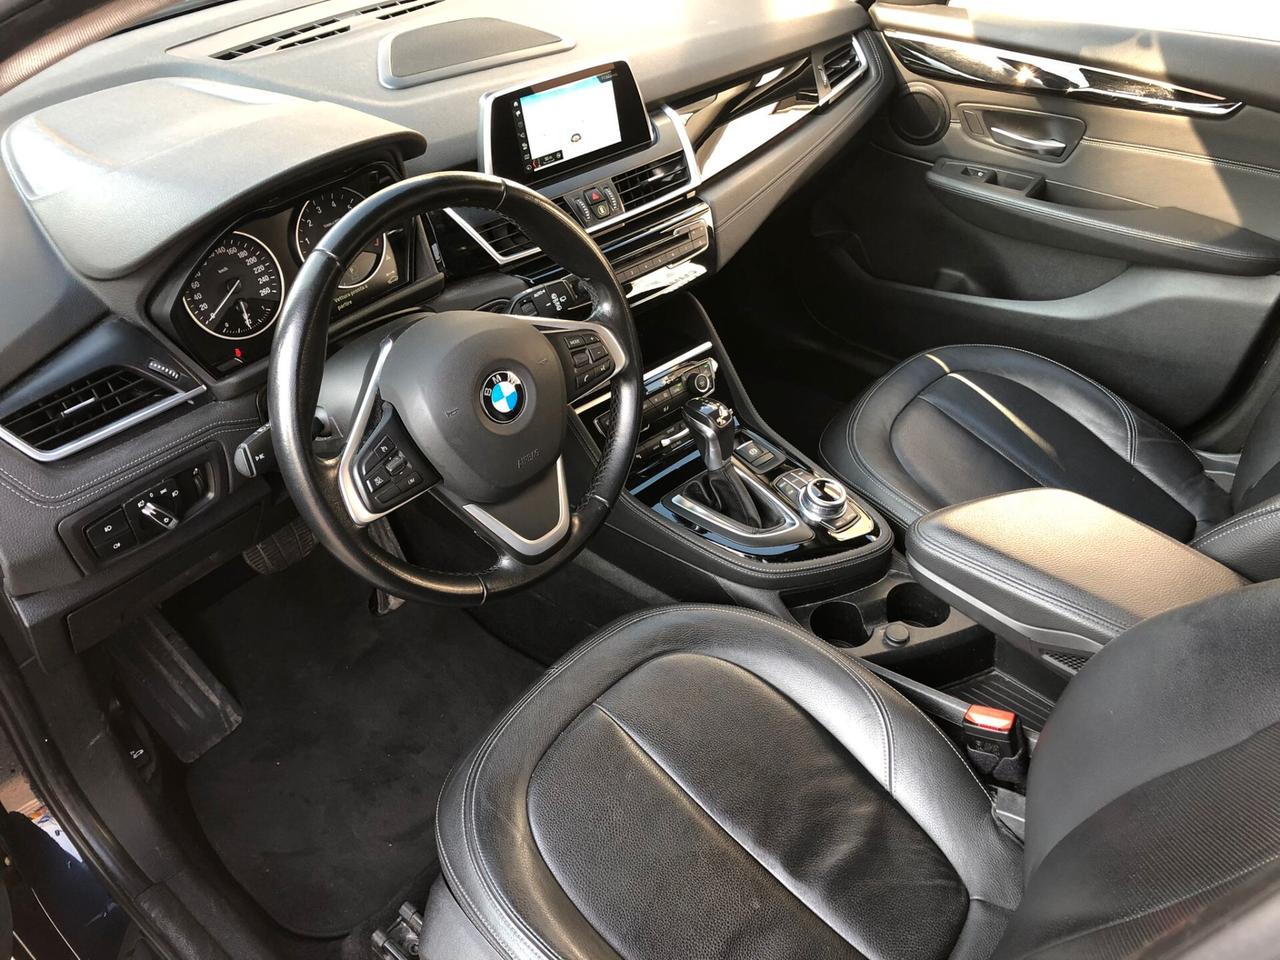 BMW 225 xe Active Tourer iPerformance Luxury - AUT/NAV/PDC